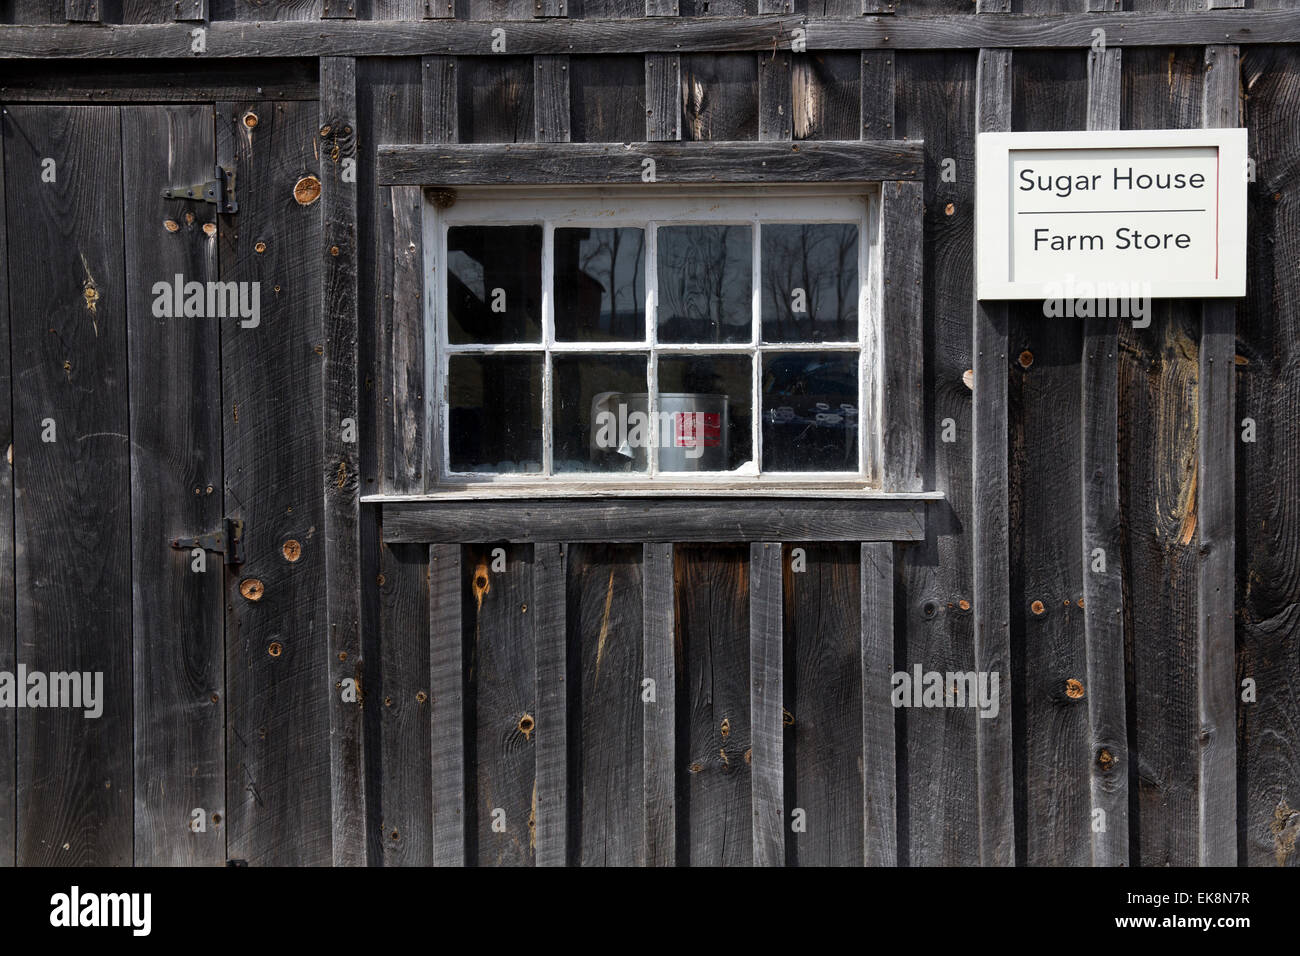 Maison de sucre d'érable, Northfield, Massachusetts, USA Banque D'Images